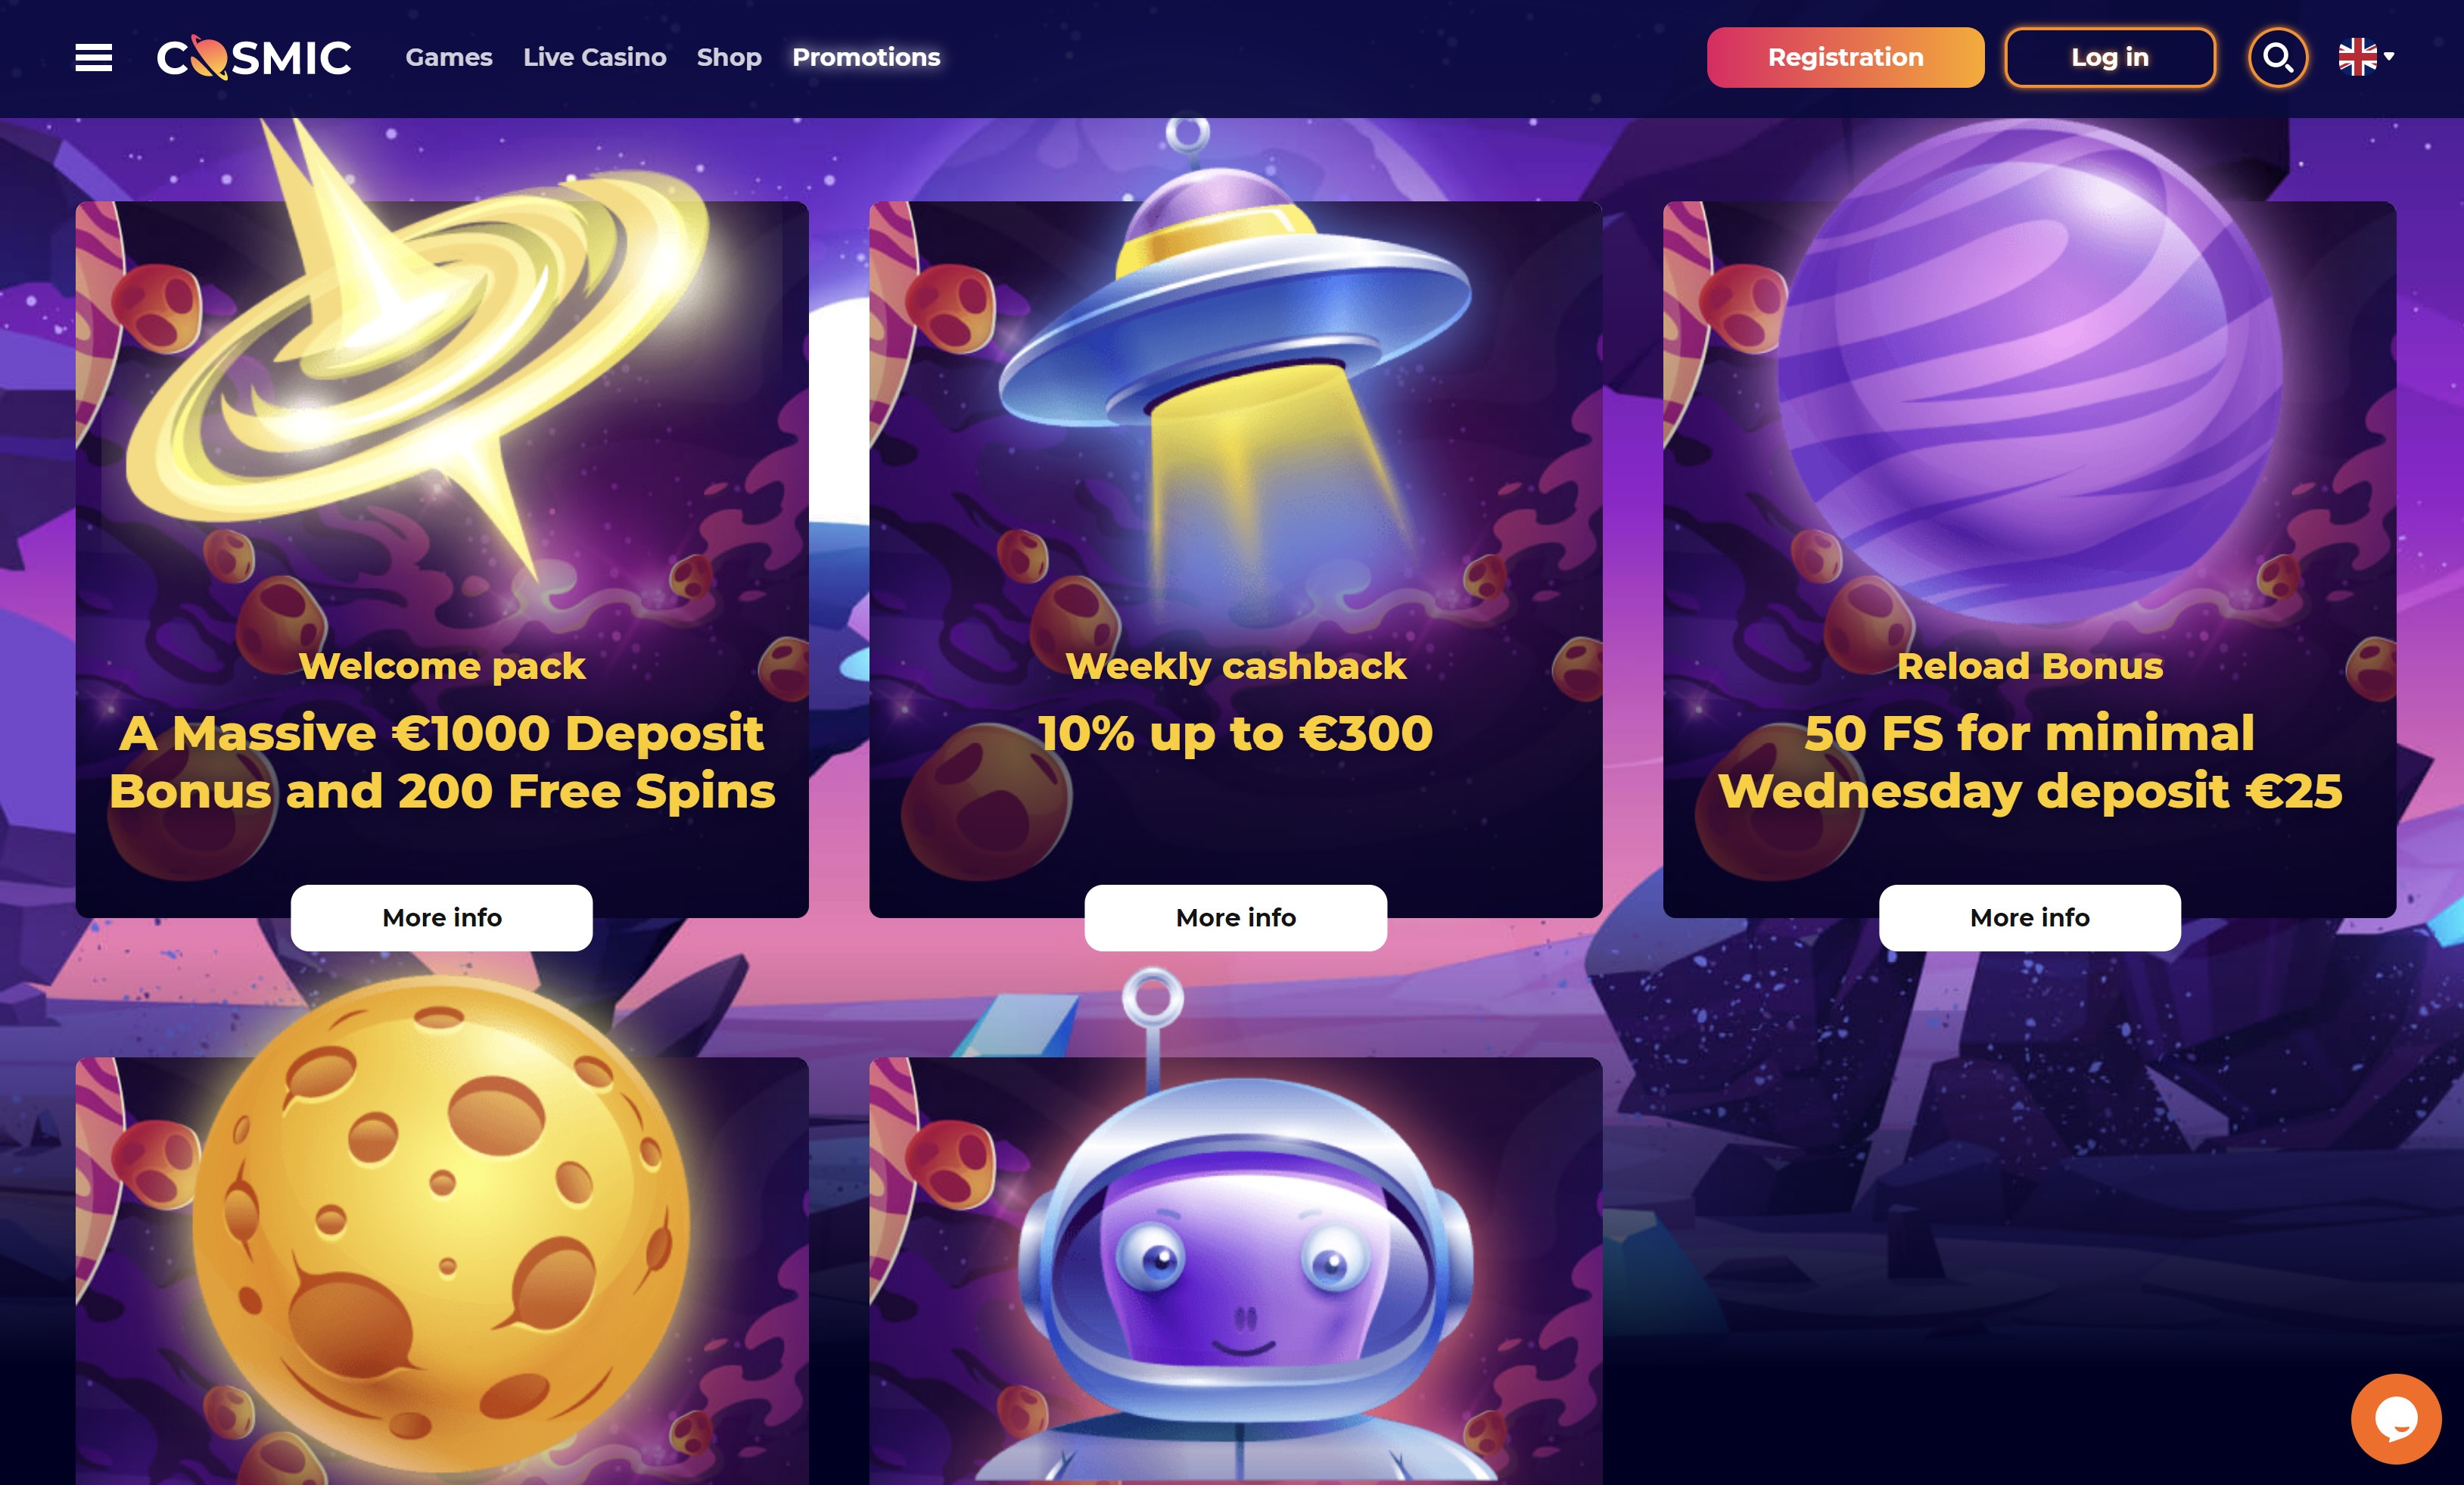 cosmicslot casino bonus - cosmic slot casino no deposit bonus promo code